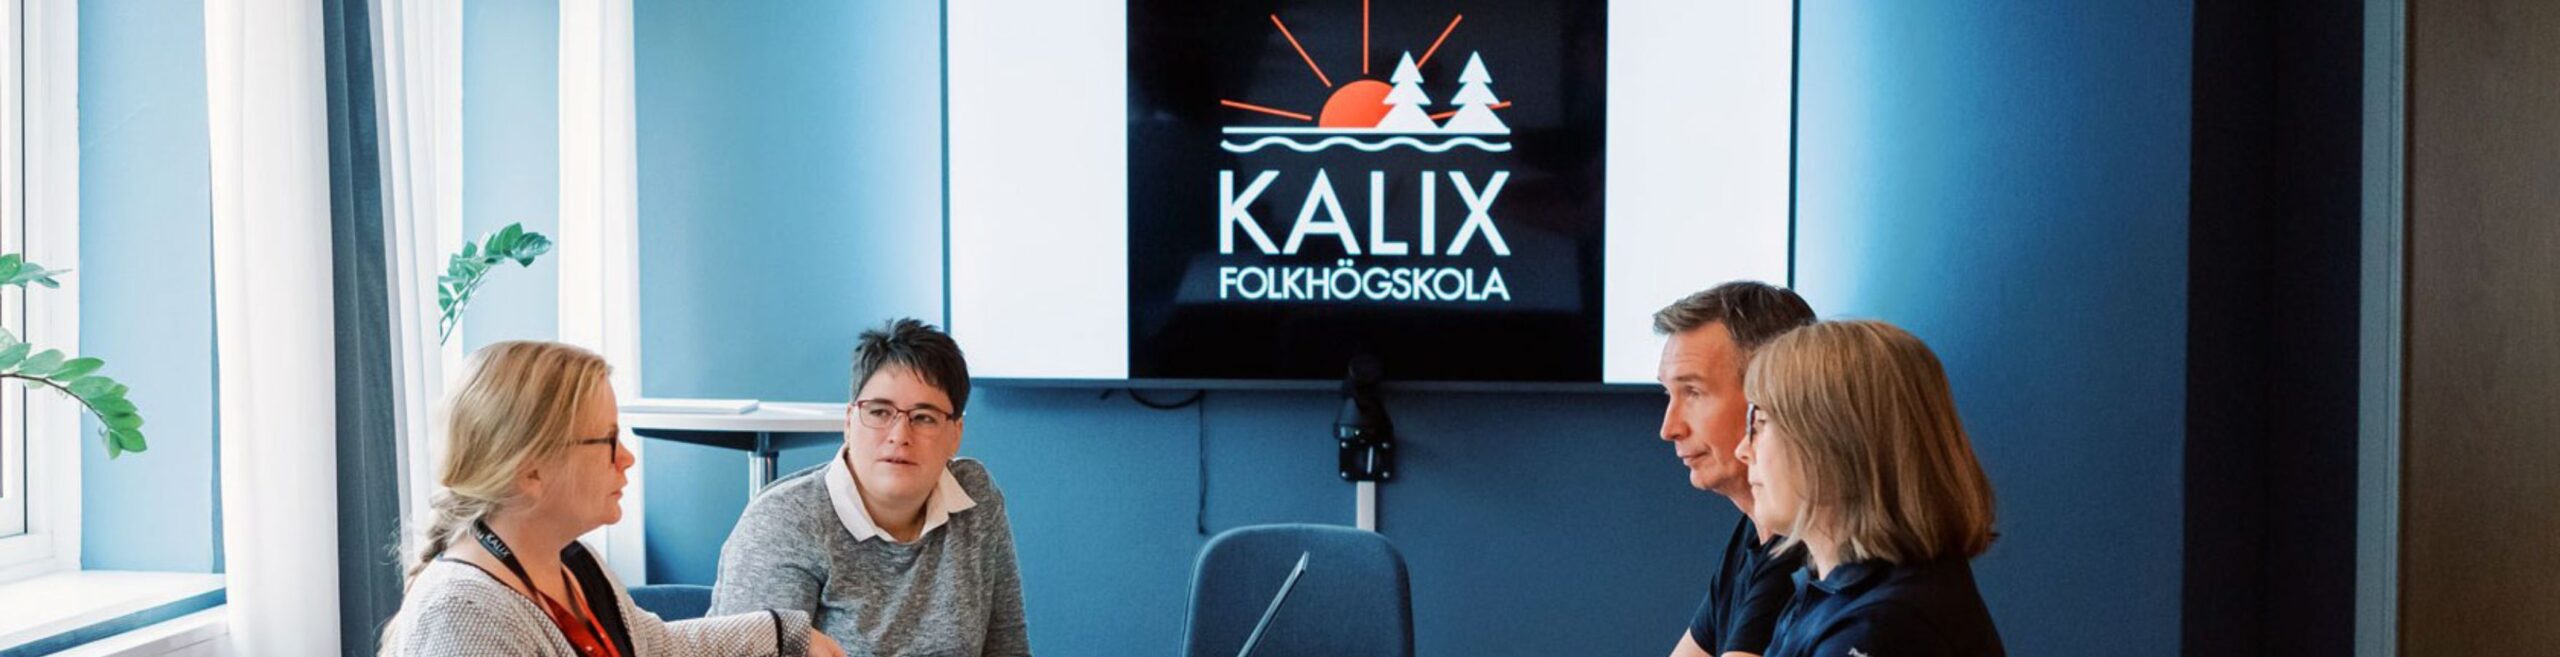 Konferens på Kalix folkhögskola